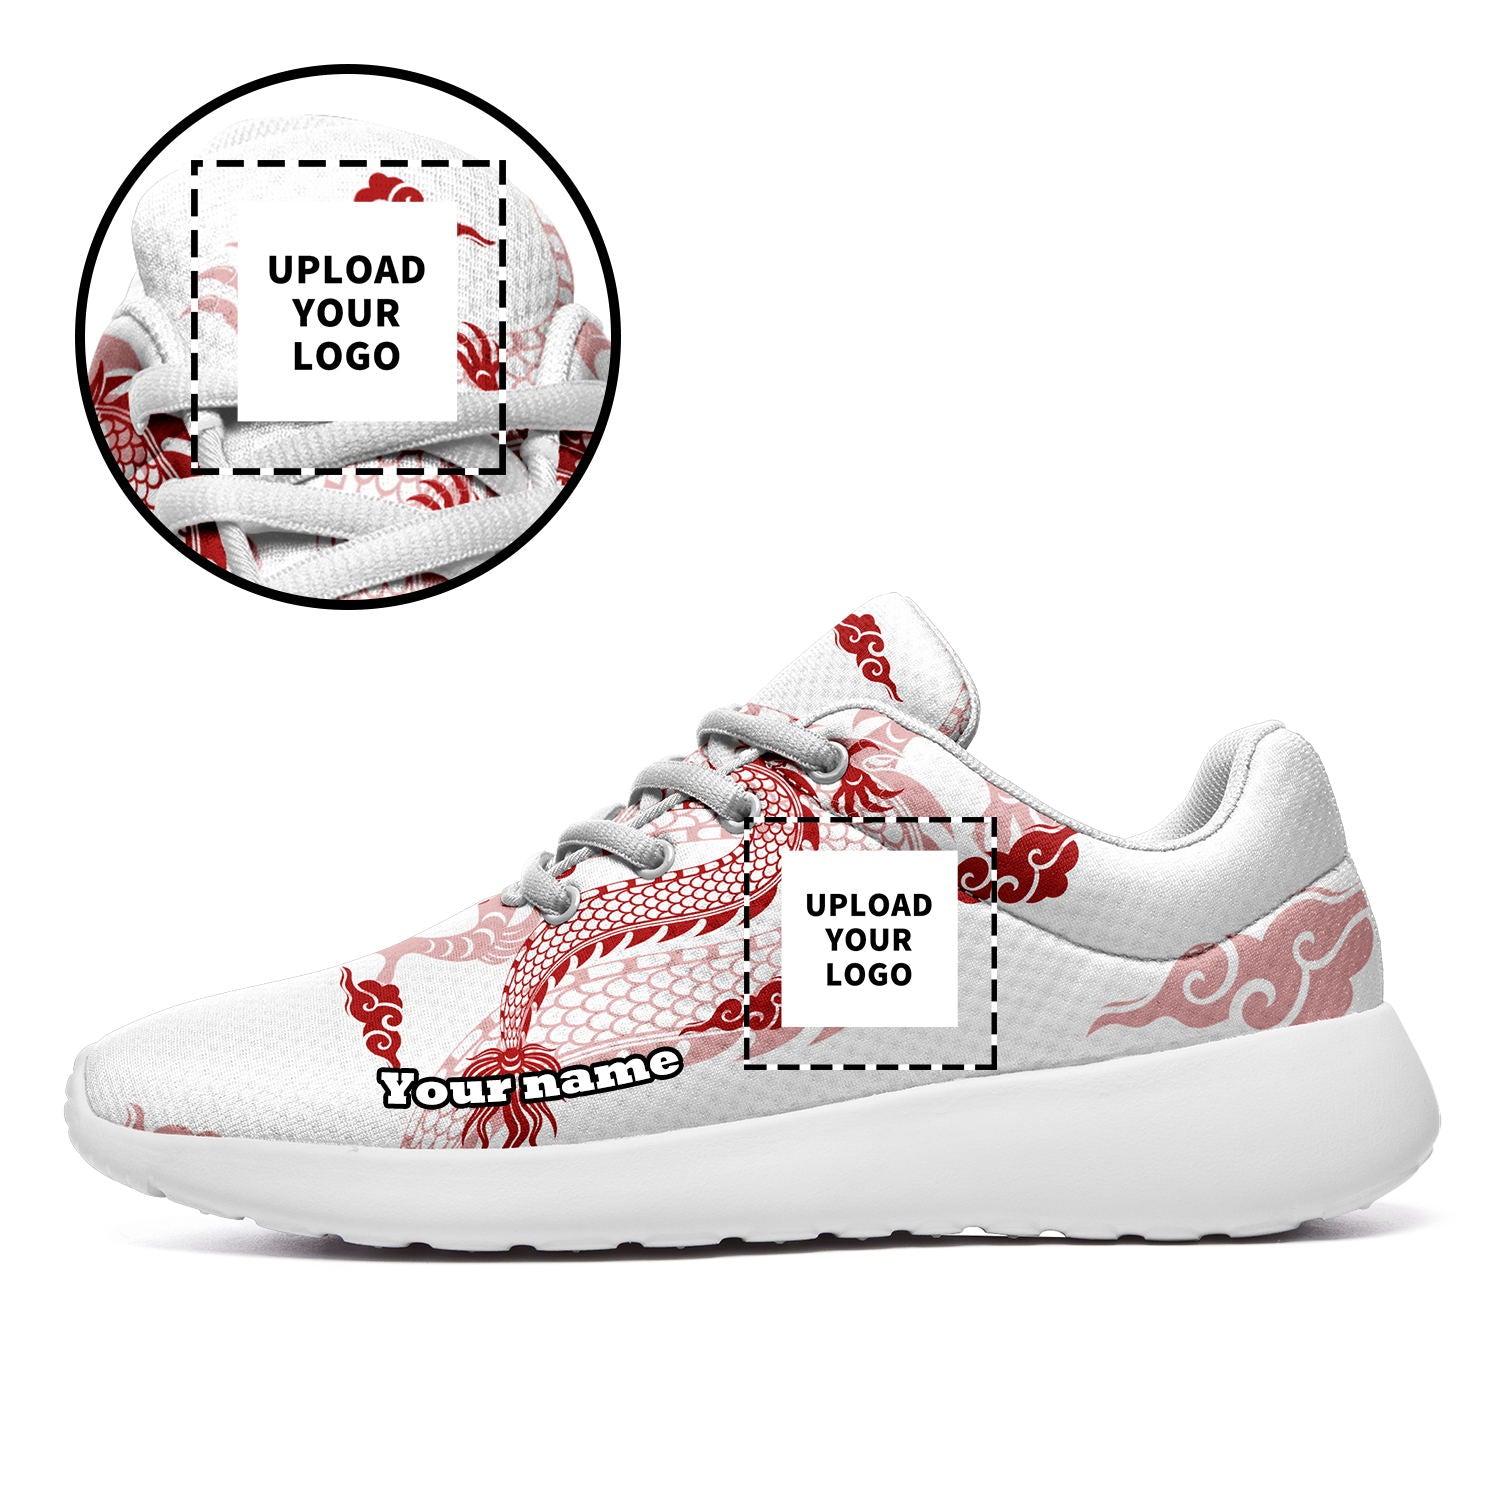 柔性定制打印个性化设计中国龙元素运动鞋红色白底067-24025002_12